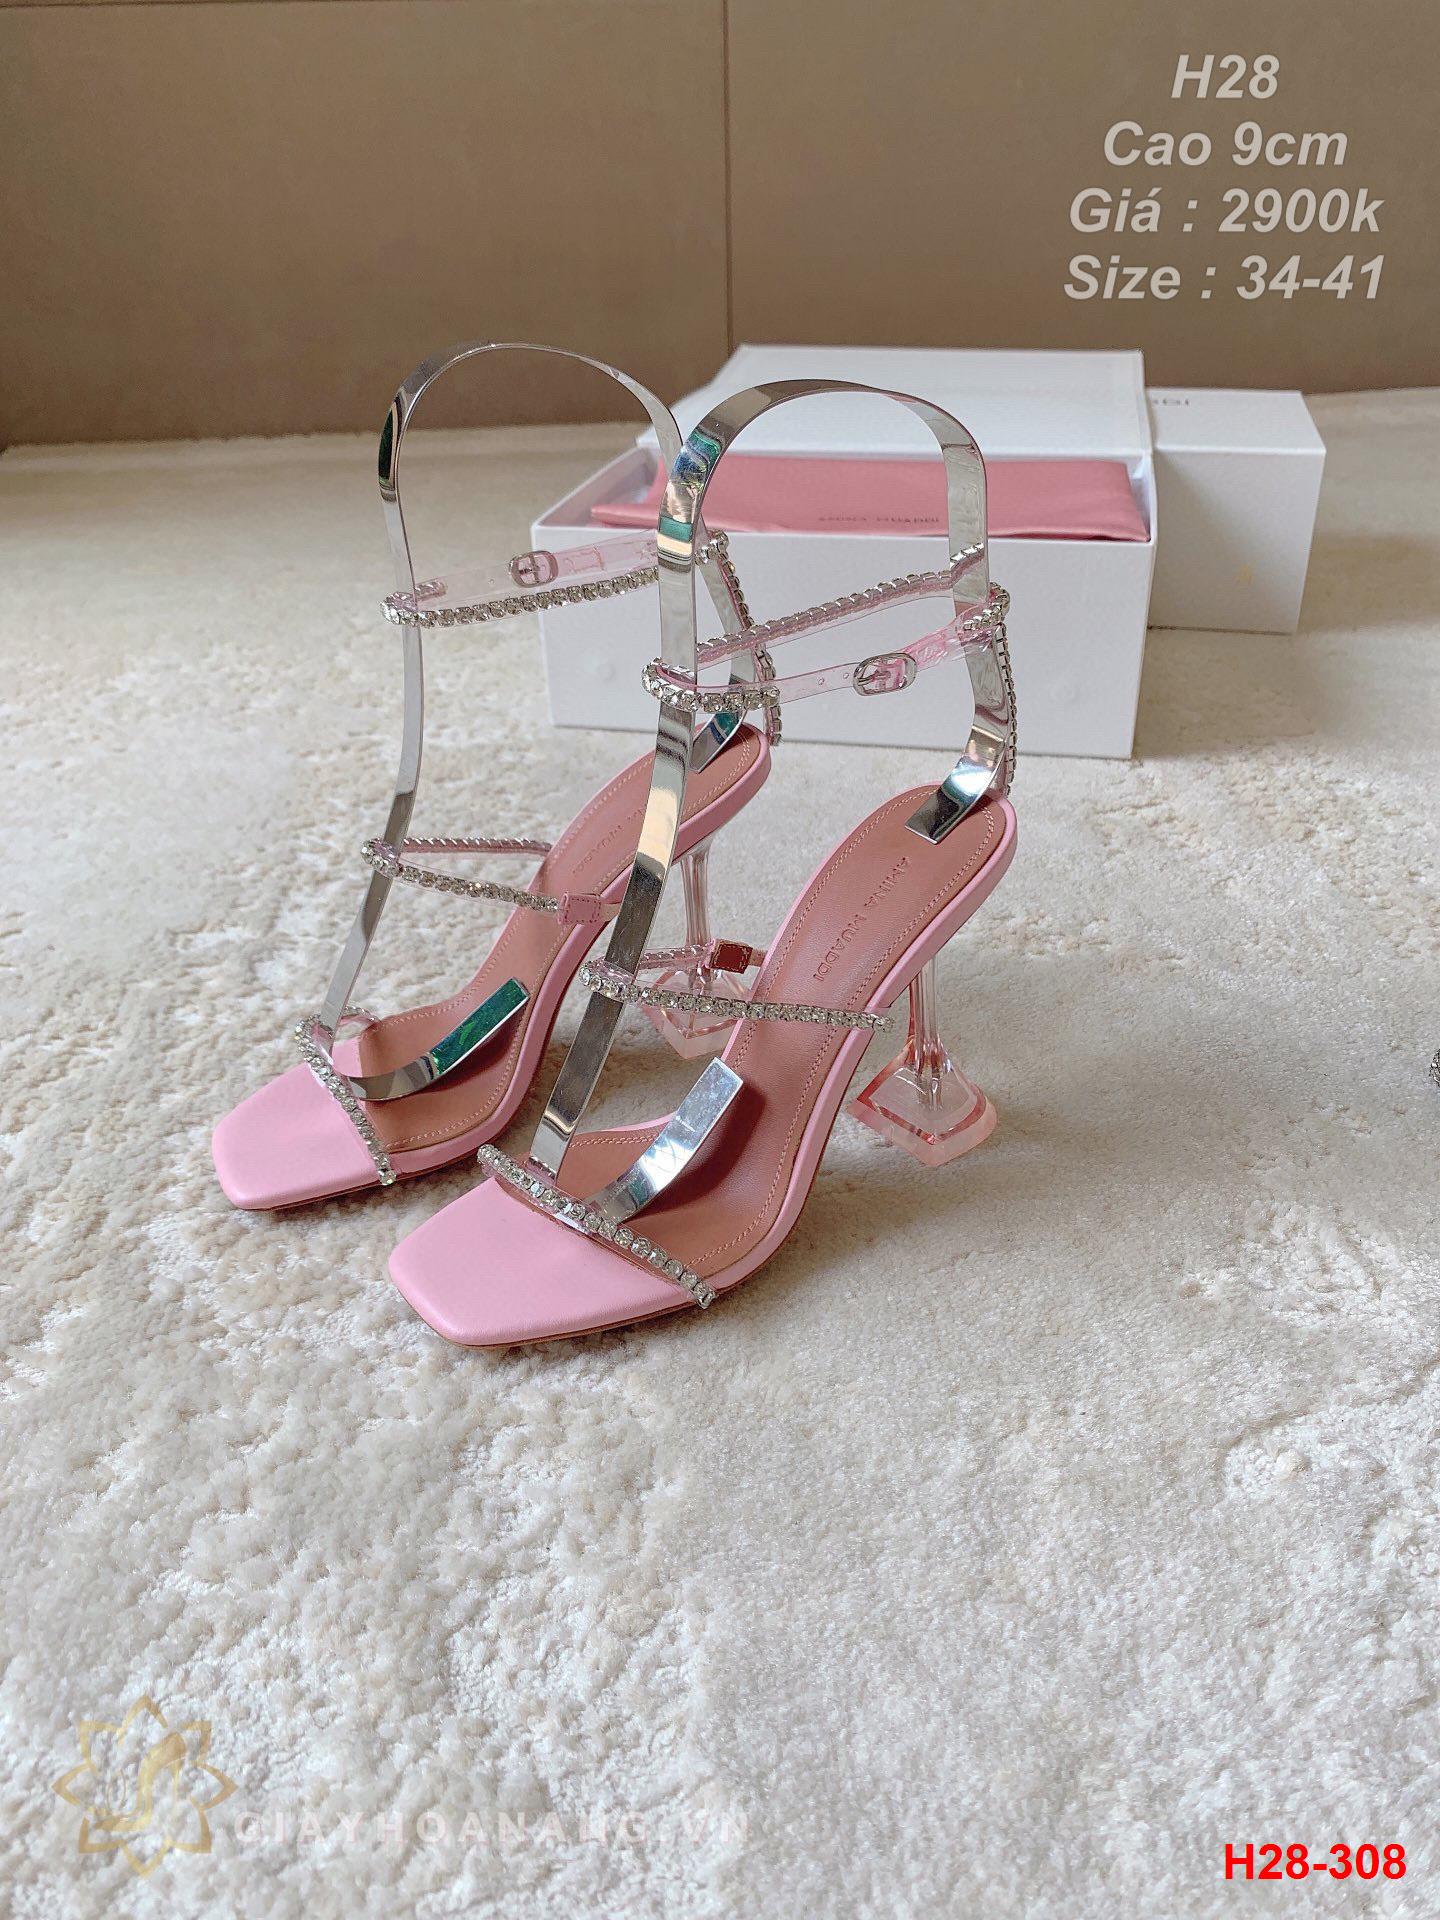 H28-308 Amina Muaddi sandal cao 9cm siêu cấp